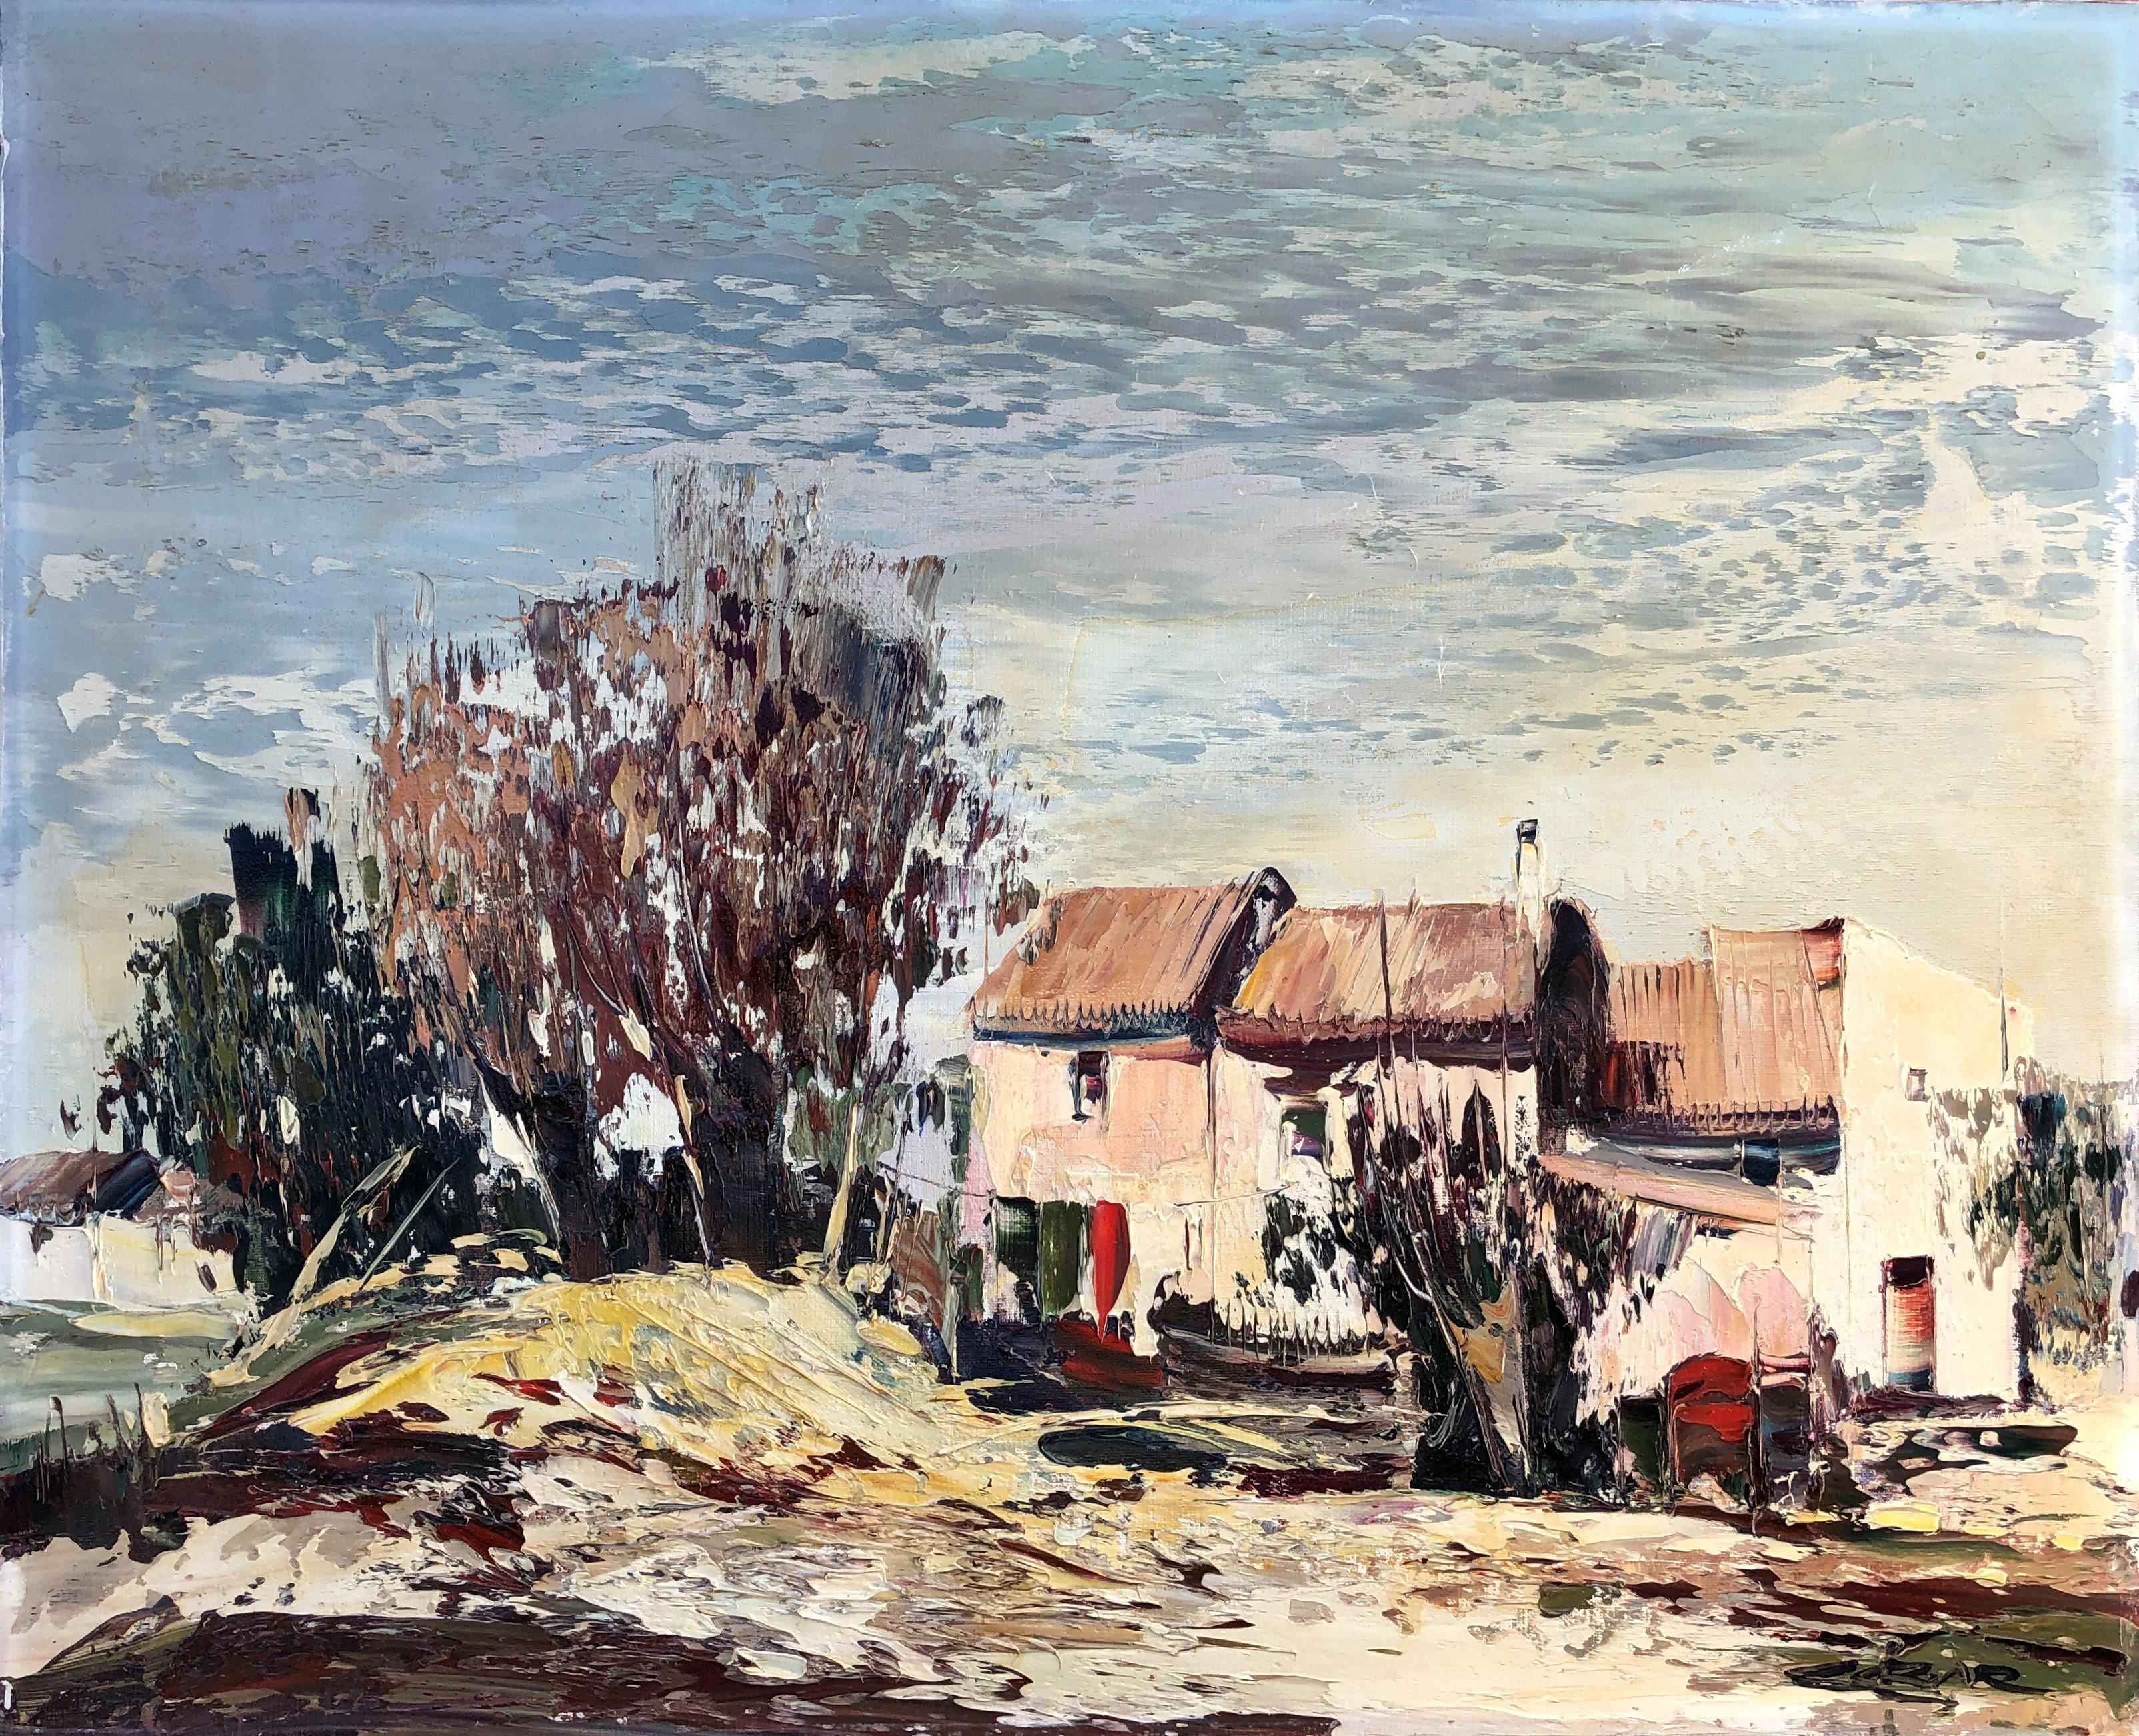 Landscape Painting Jose Cozar - Peinture à l'huile sur toile - Paysage espagnol Valence - Maisons de campagne